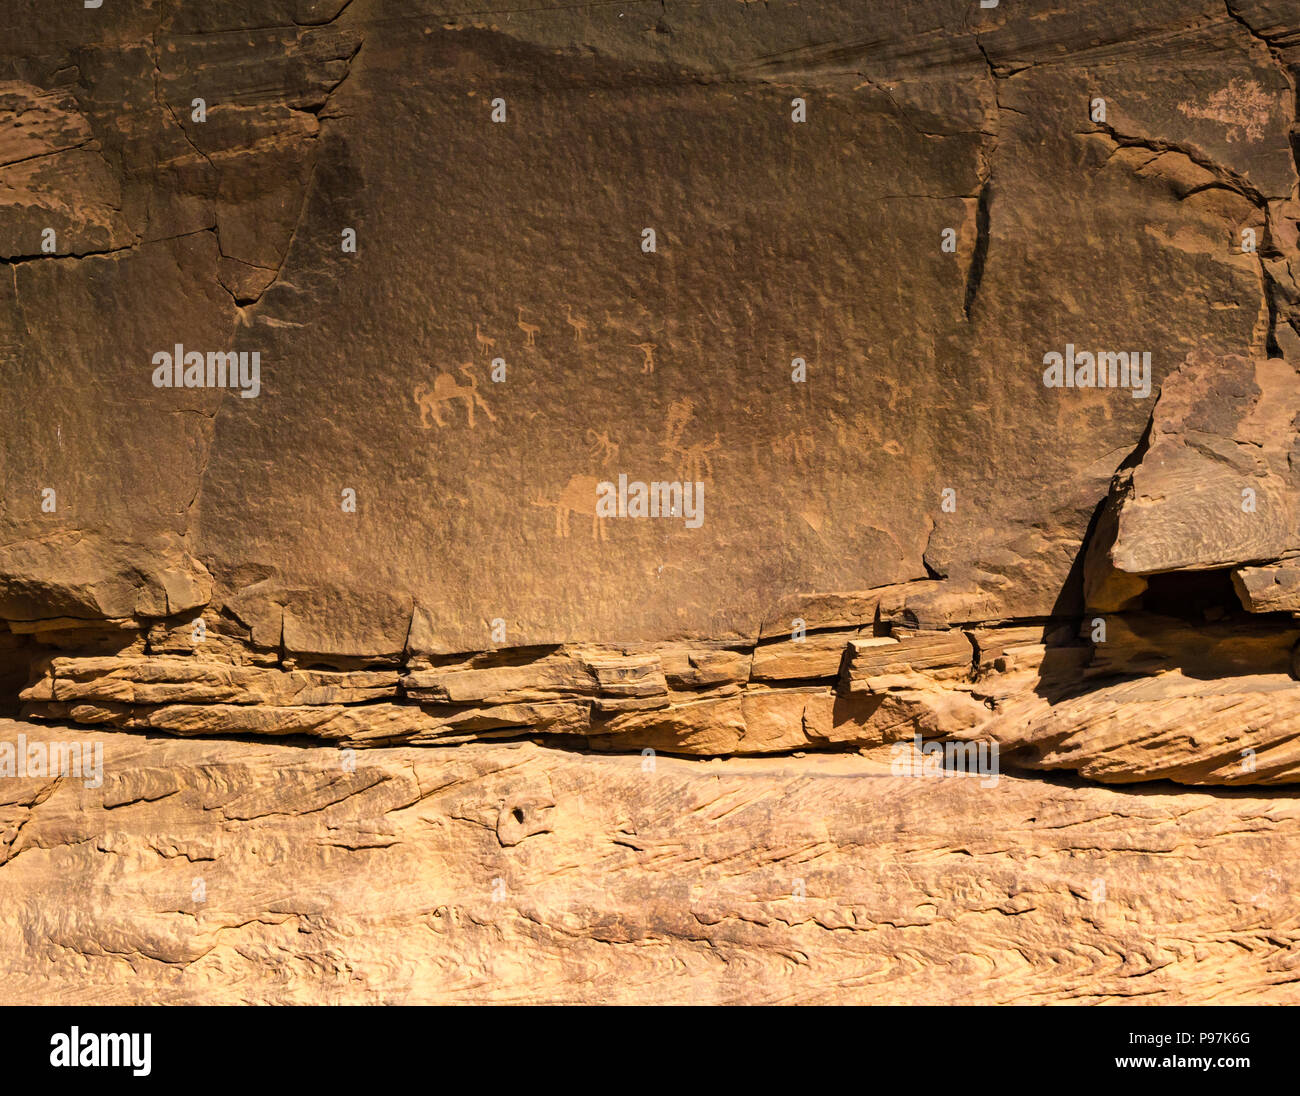 Sculptures rupestres de pétroglyphes de camel et les oiseaux de la vallée de Wadi Rum, Jordanie, Moyen-Orient Banque D'Images